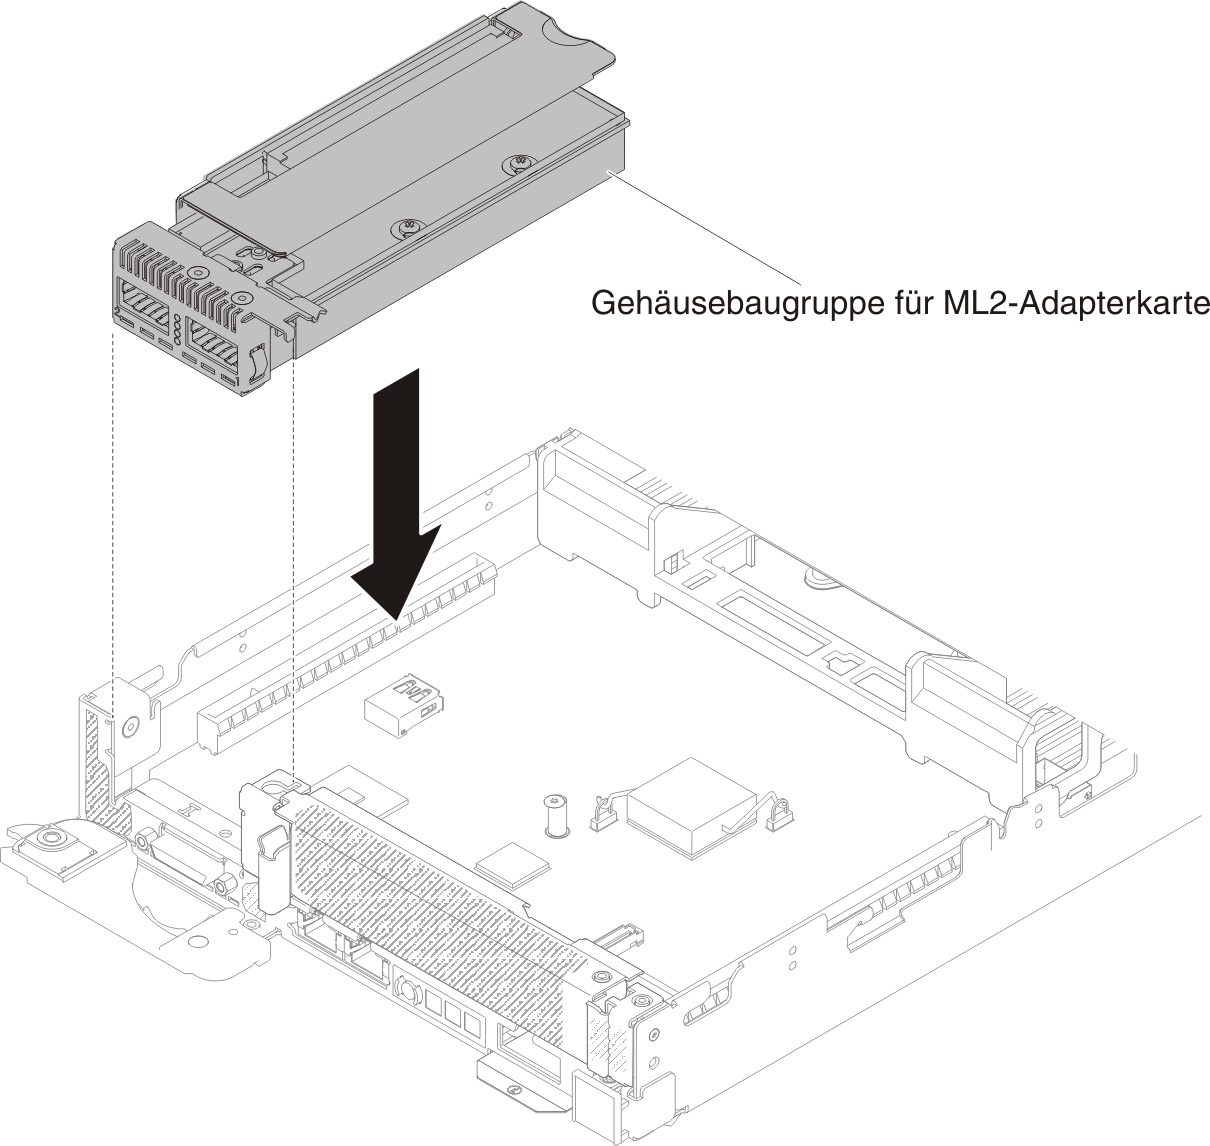 Installation der Gehäusebaugruppe für die ML2-Adapterkarte